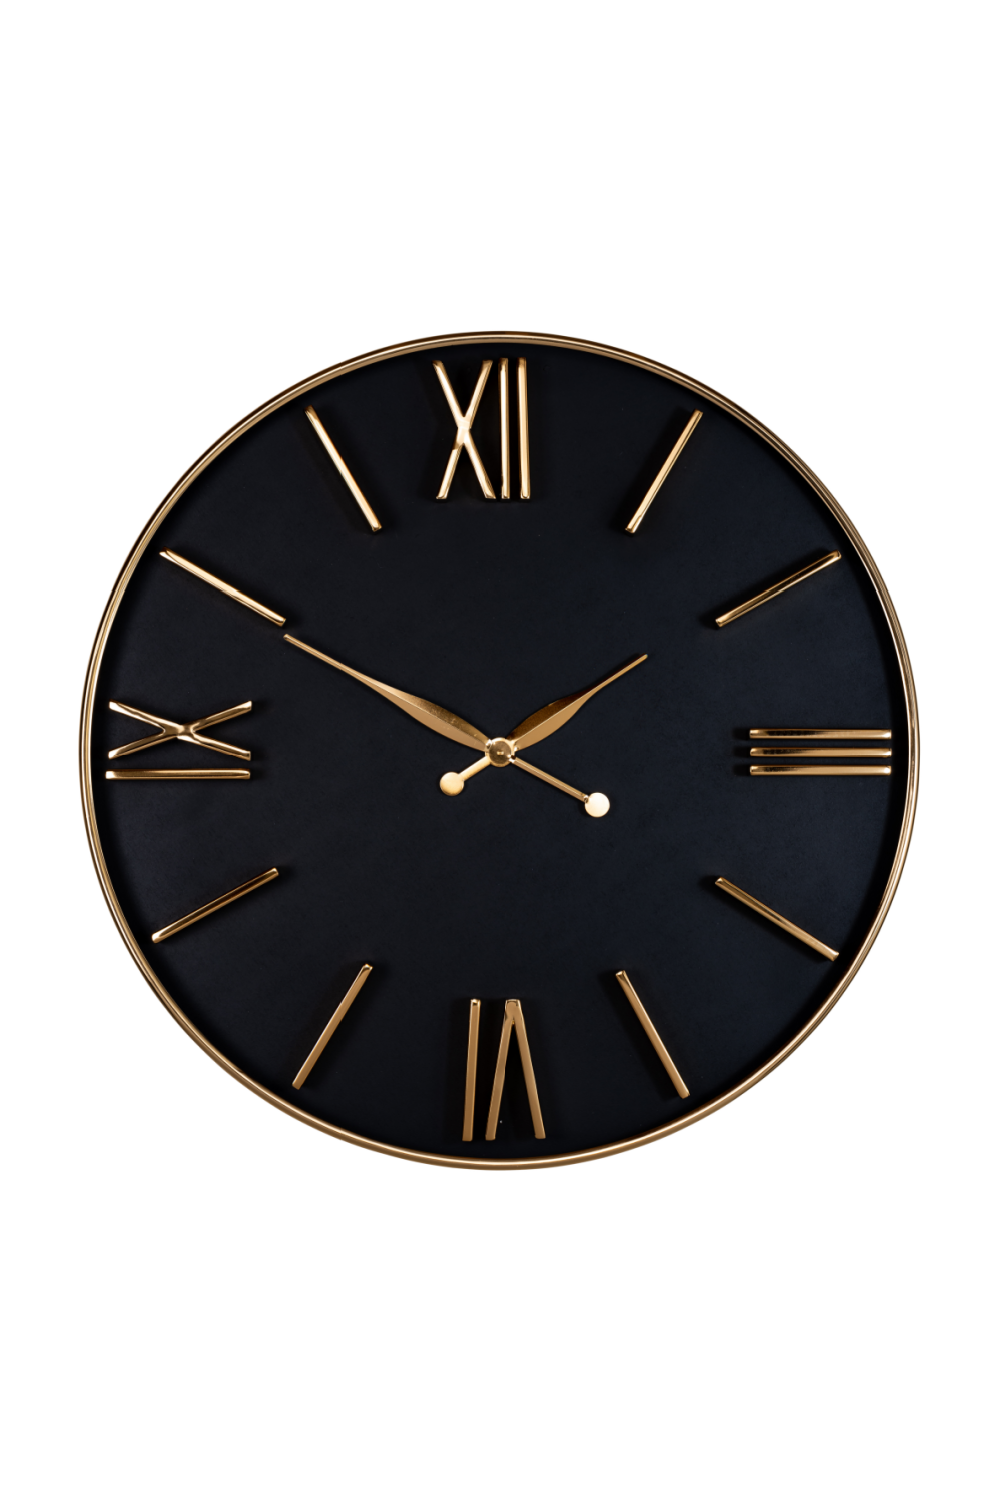 Relojes decorativos Eichholtz - Reloj de repisa o de mesa y de pared